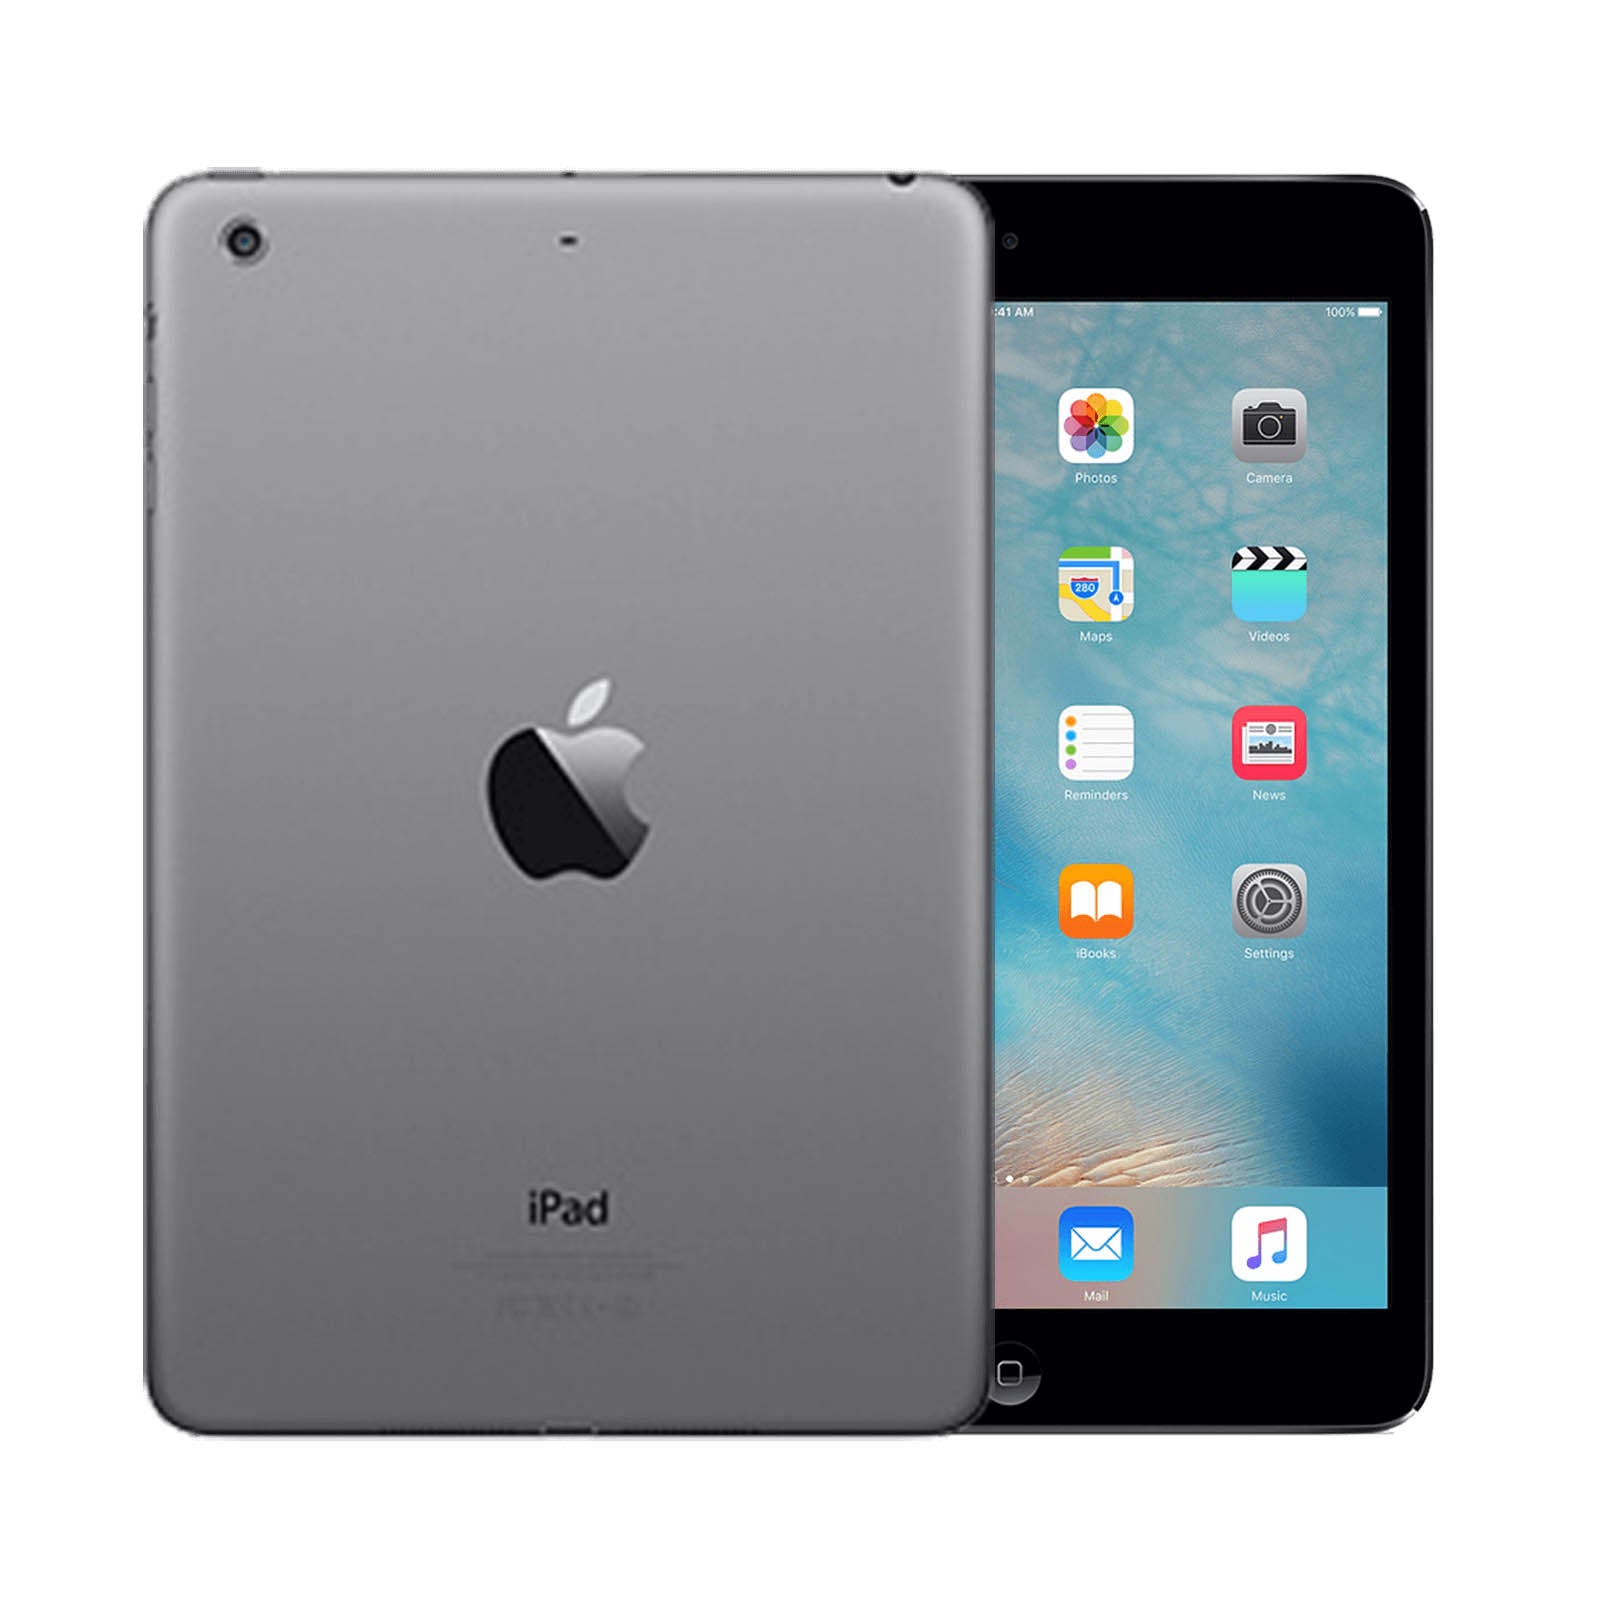 iPad Mini 3 16GB WiFi & Cellular -Space Grey -Very Good 16GB Space Grey Very Good